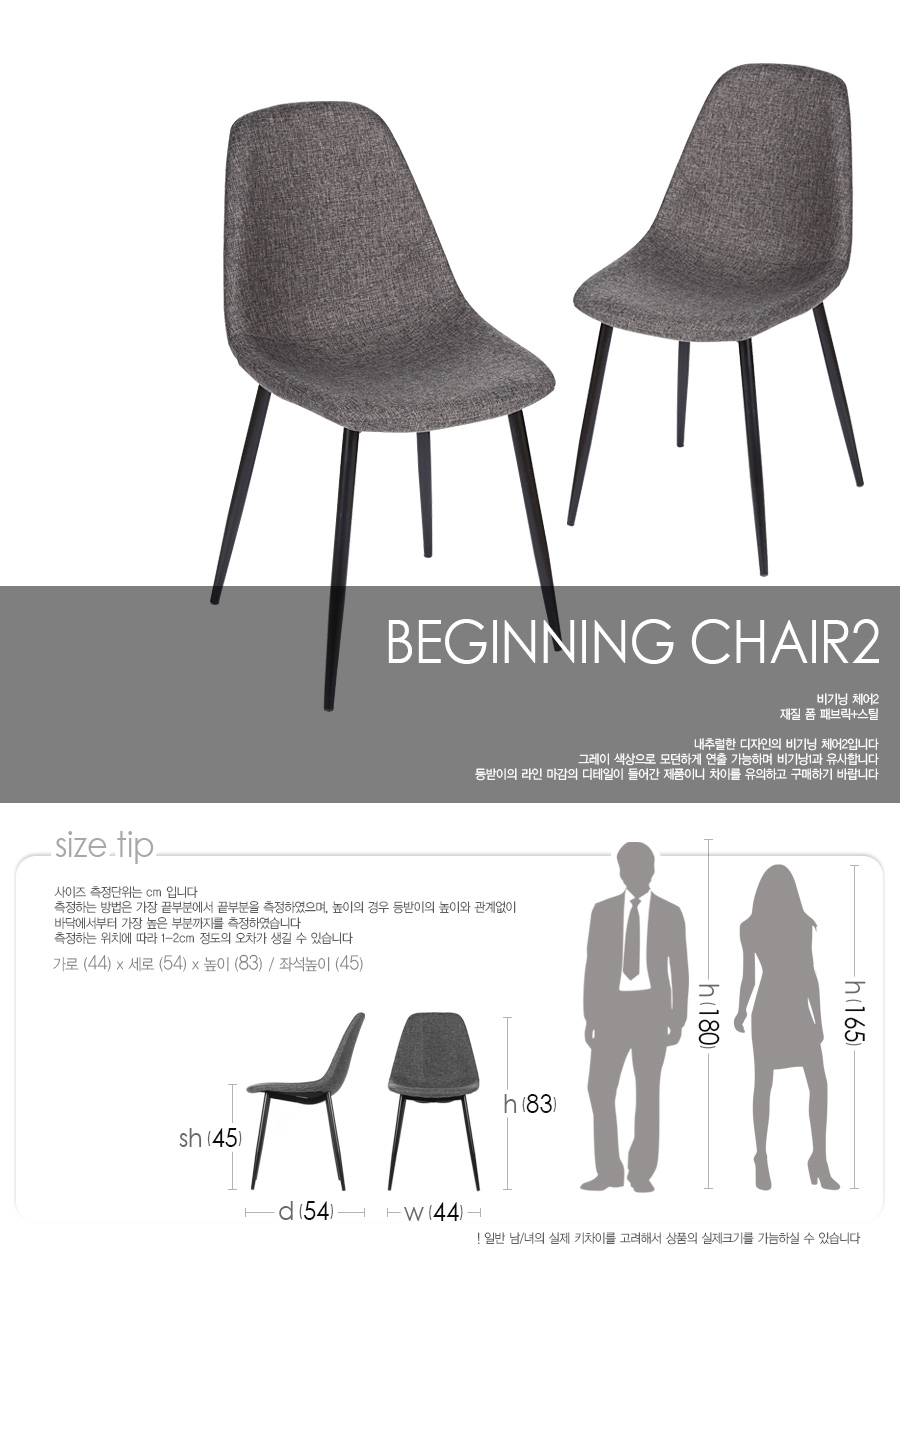 beginning-chair2_01.jpg